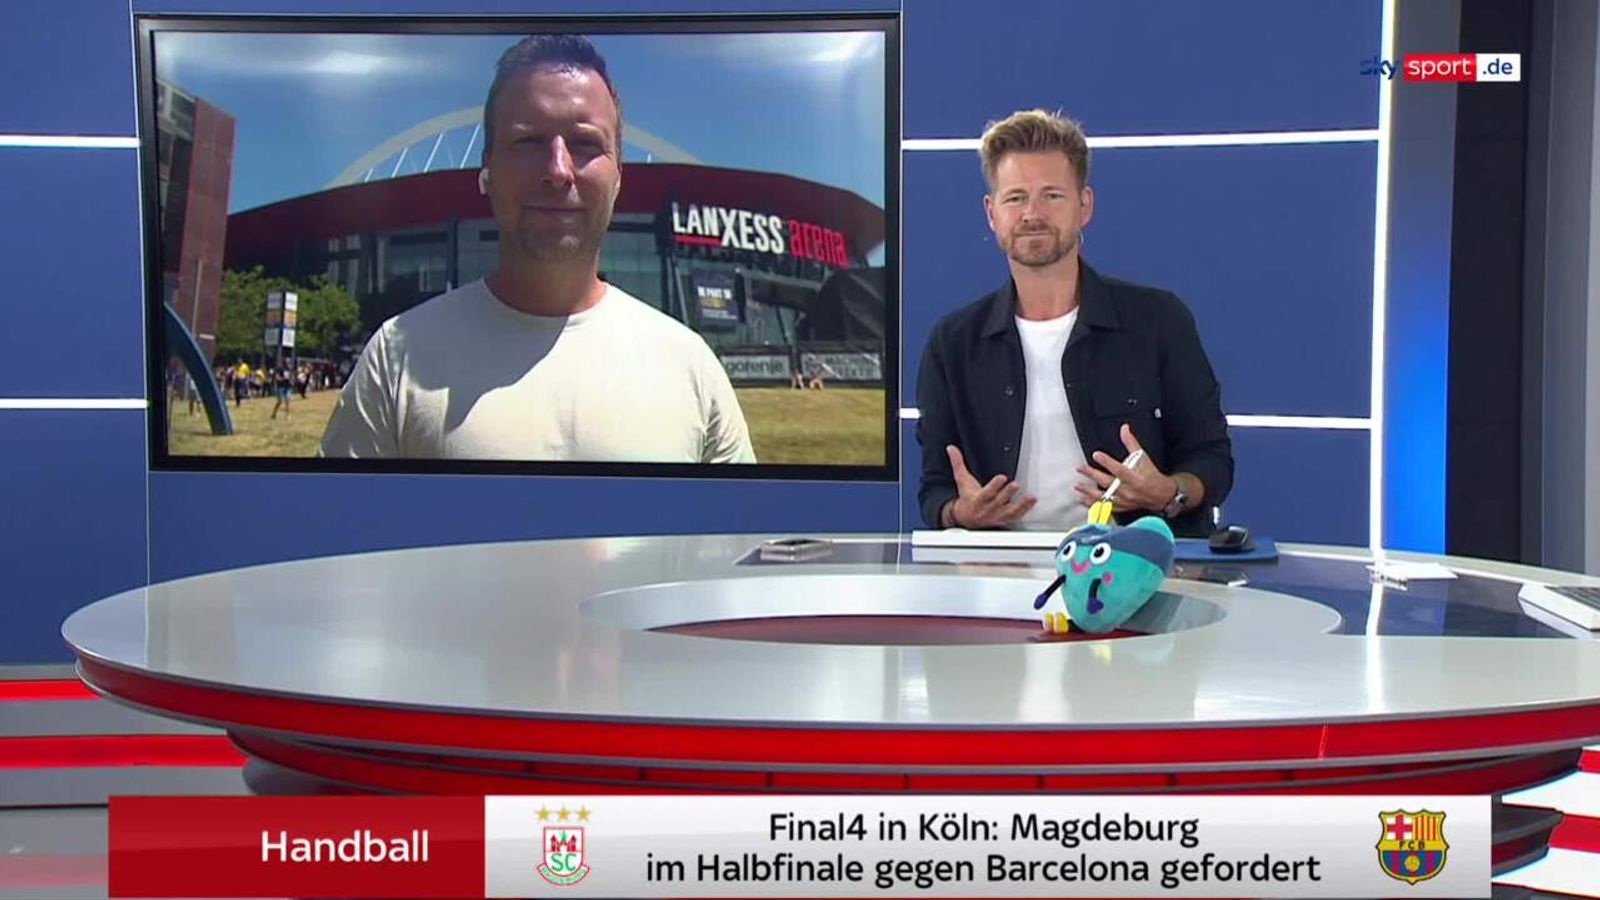 Handball SC Magdeburg will HCL-Titelverteidiger FC Barcelona stürzen Handball News Sky Sport